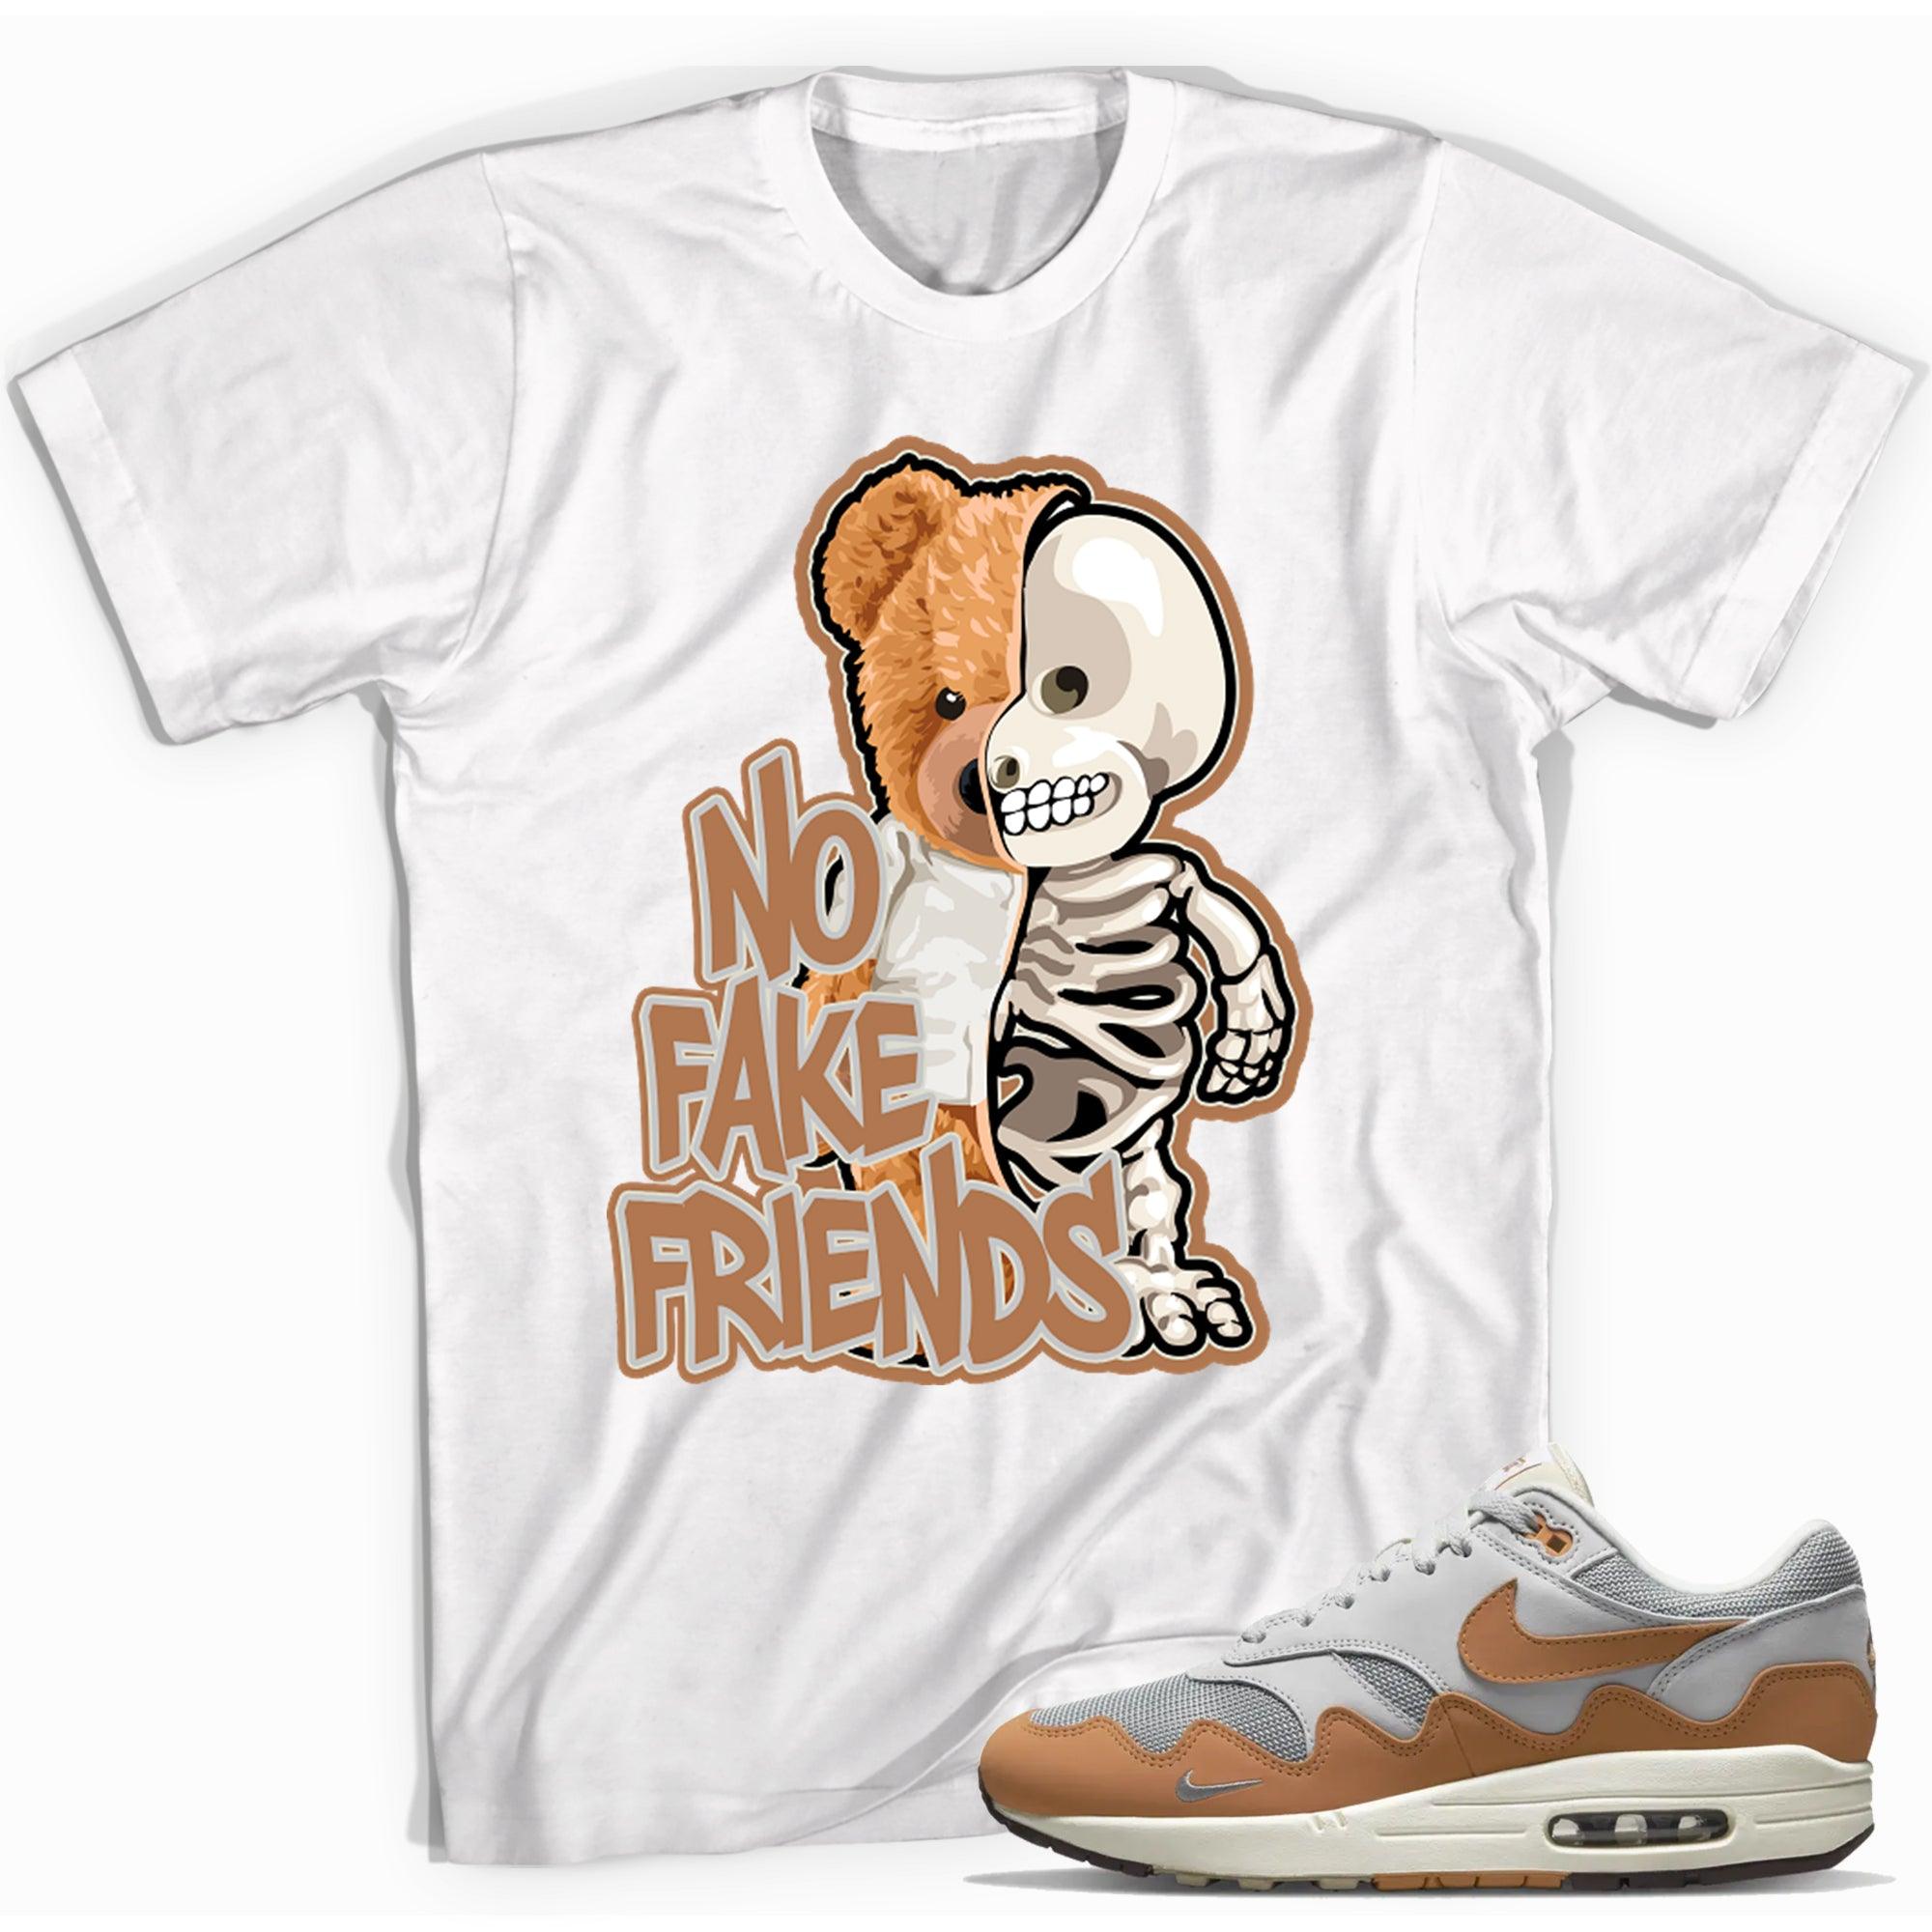  No Fake Friends Shirt Air Max 1s Patta x Monarch photo